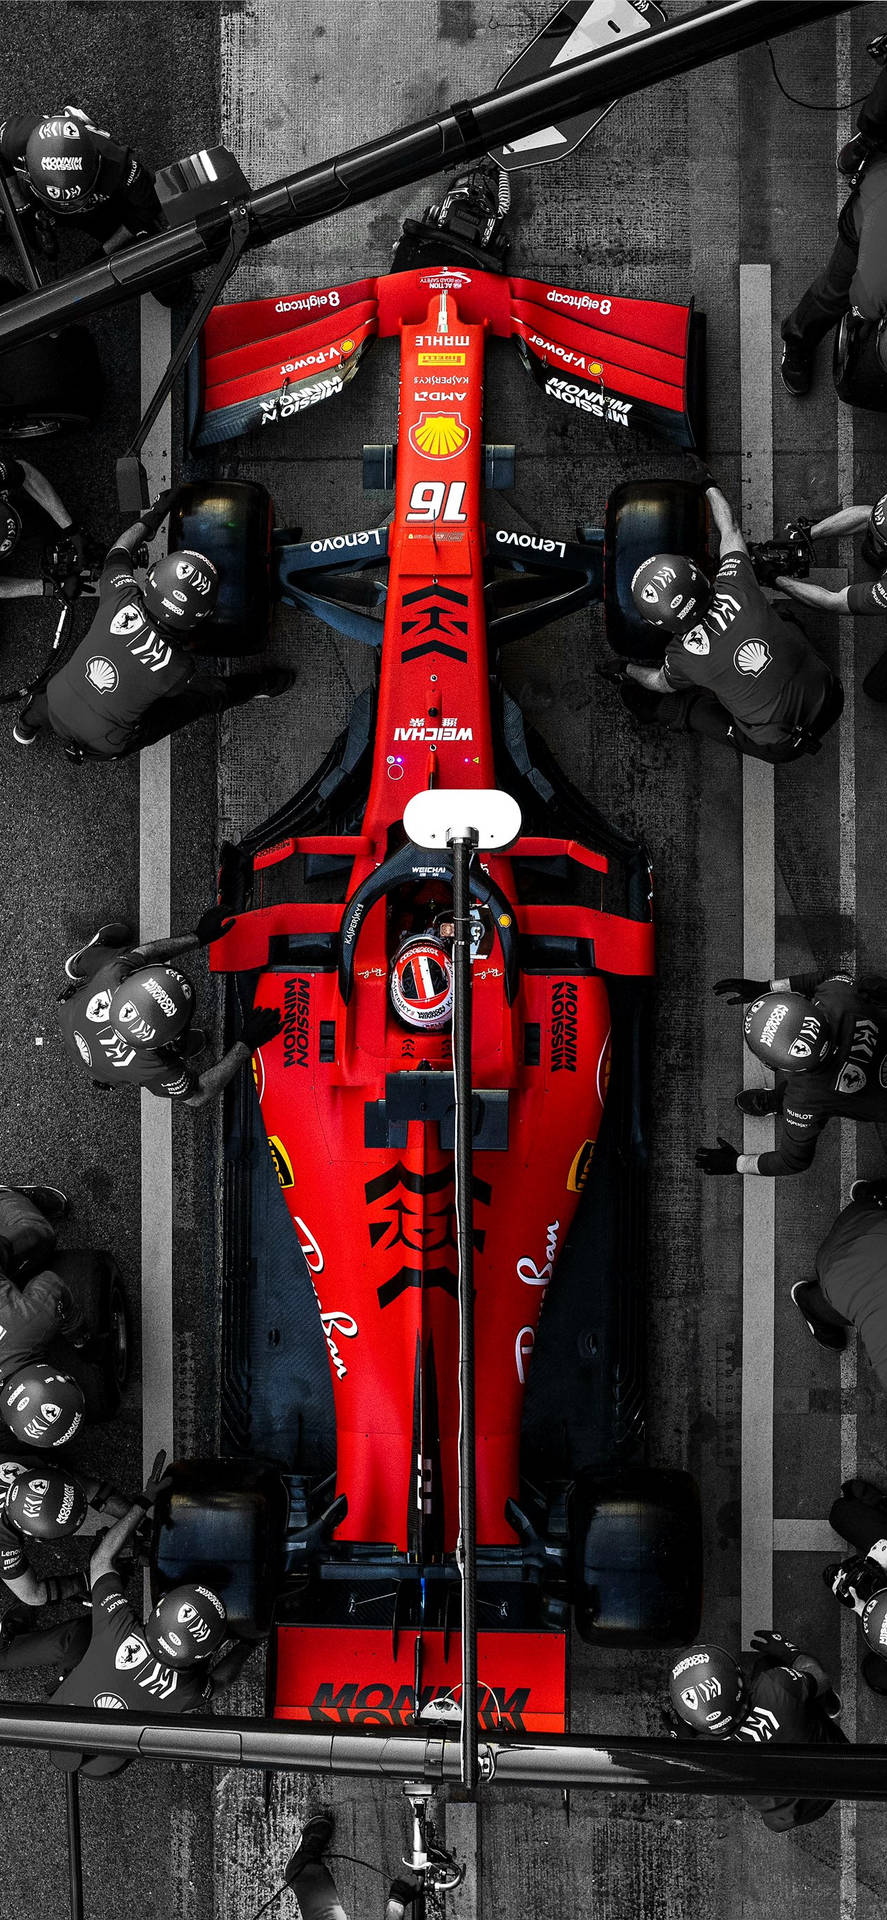 A Red Ferrari Racing Car Background